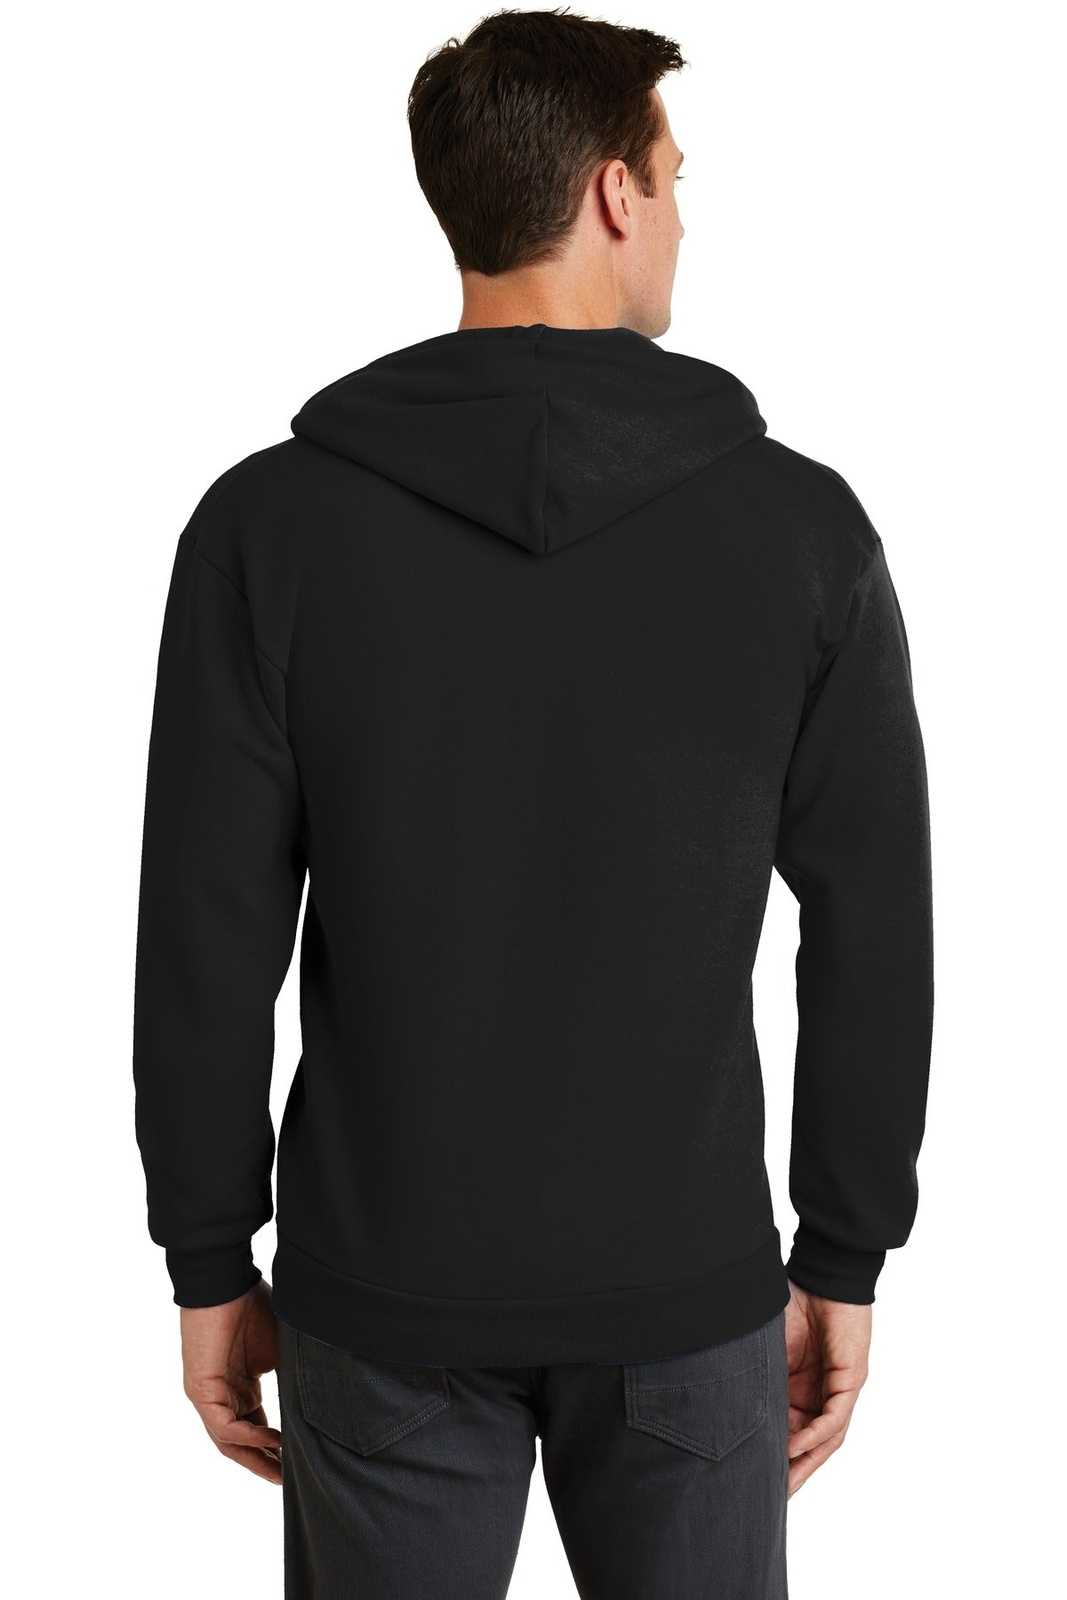 Port & Company PC78ZH Core Fleece Full-Zip Hooded Sweatshirt - Jet Black - HIT a Double - 1